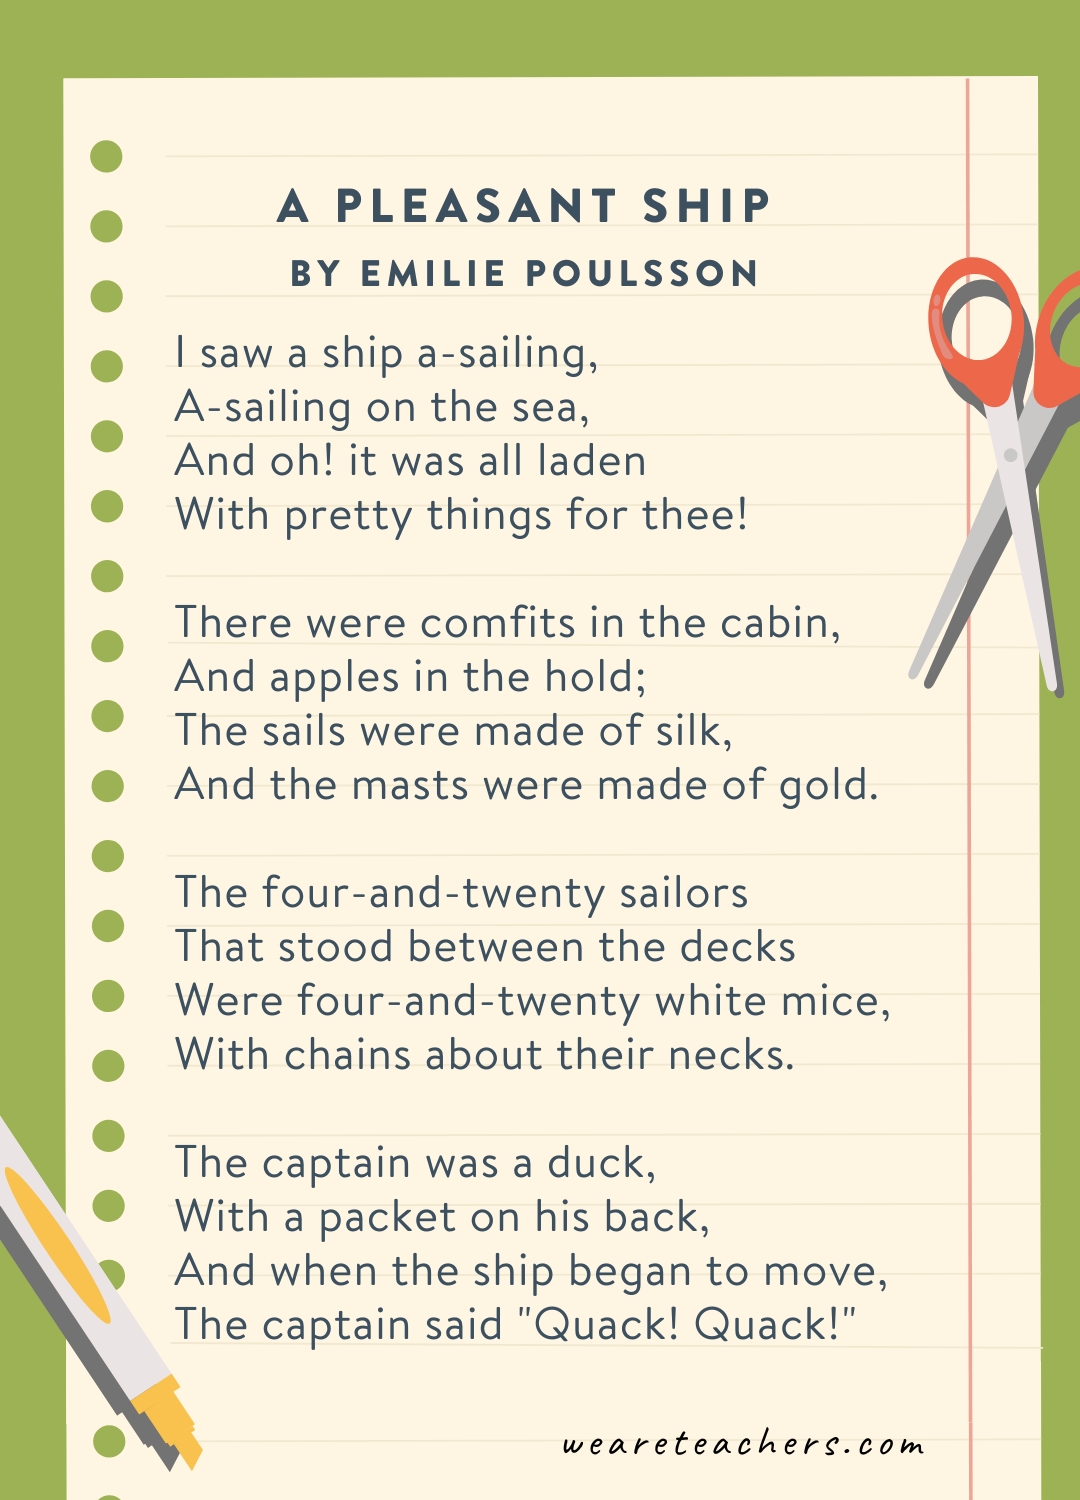 A Pleasant Ship by Emilie Poulsson